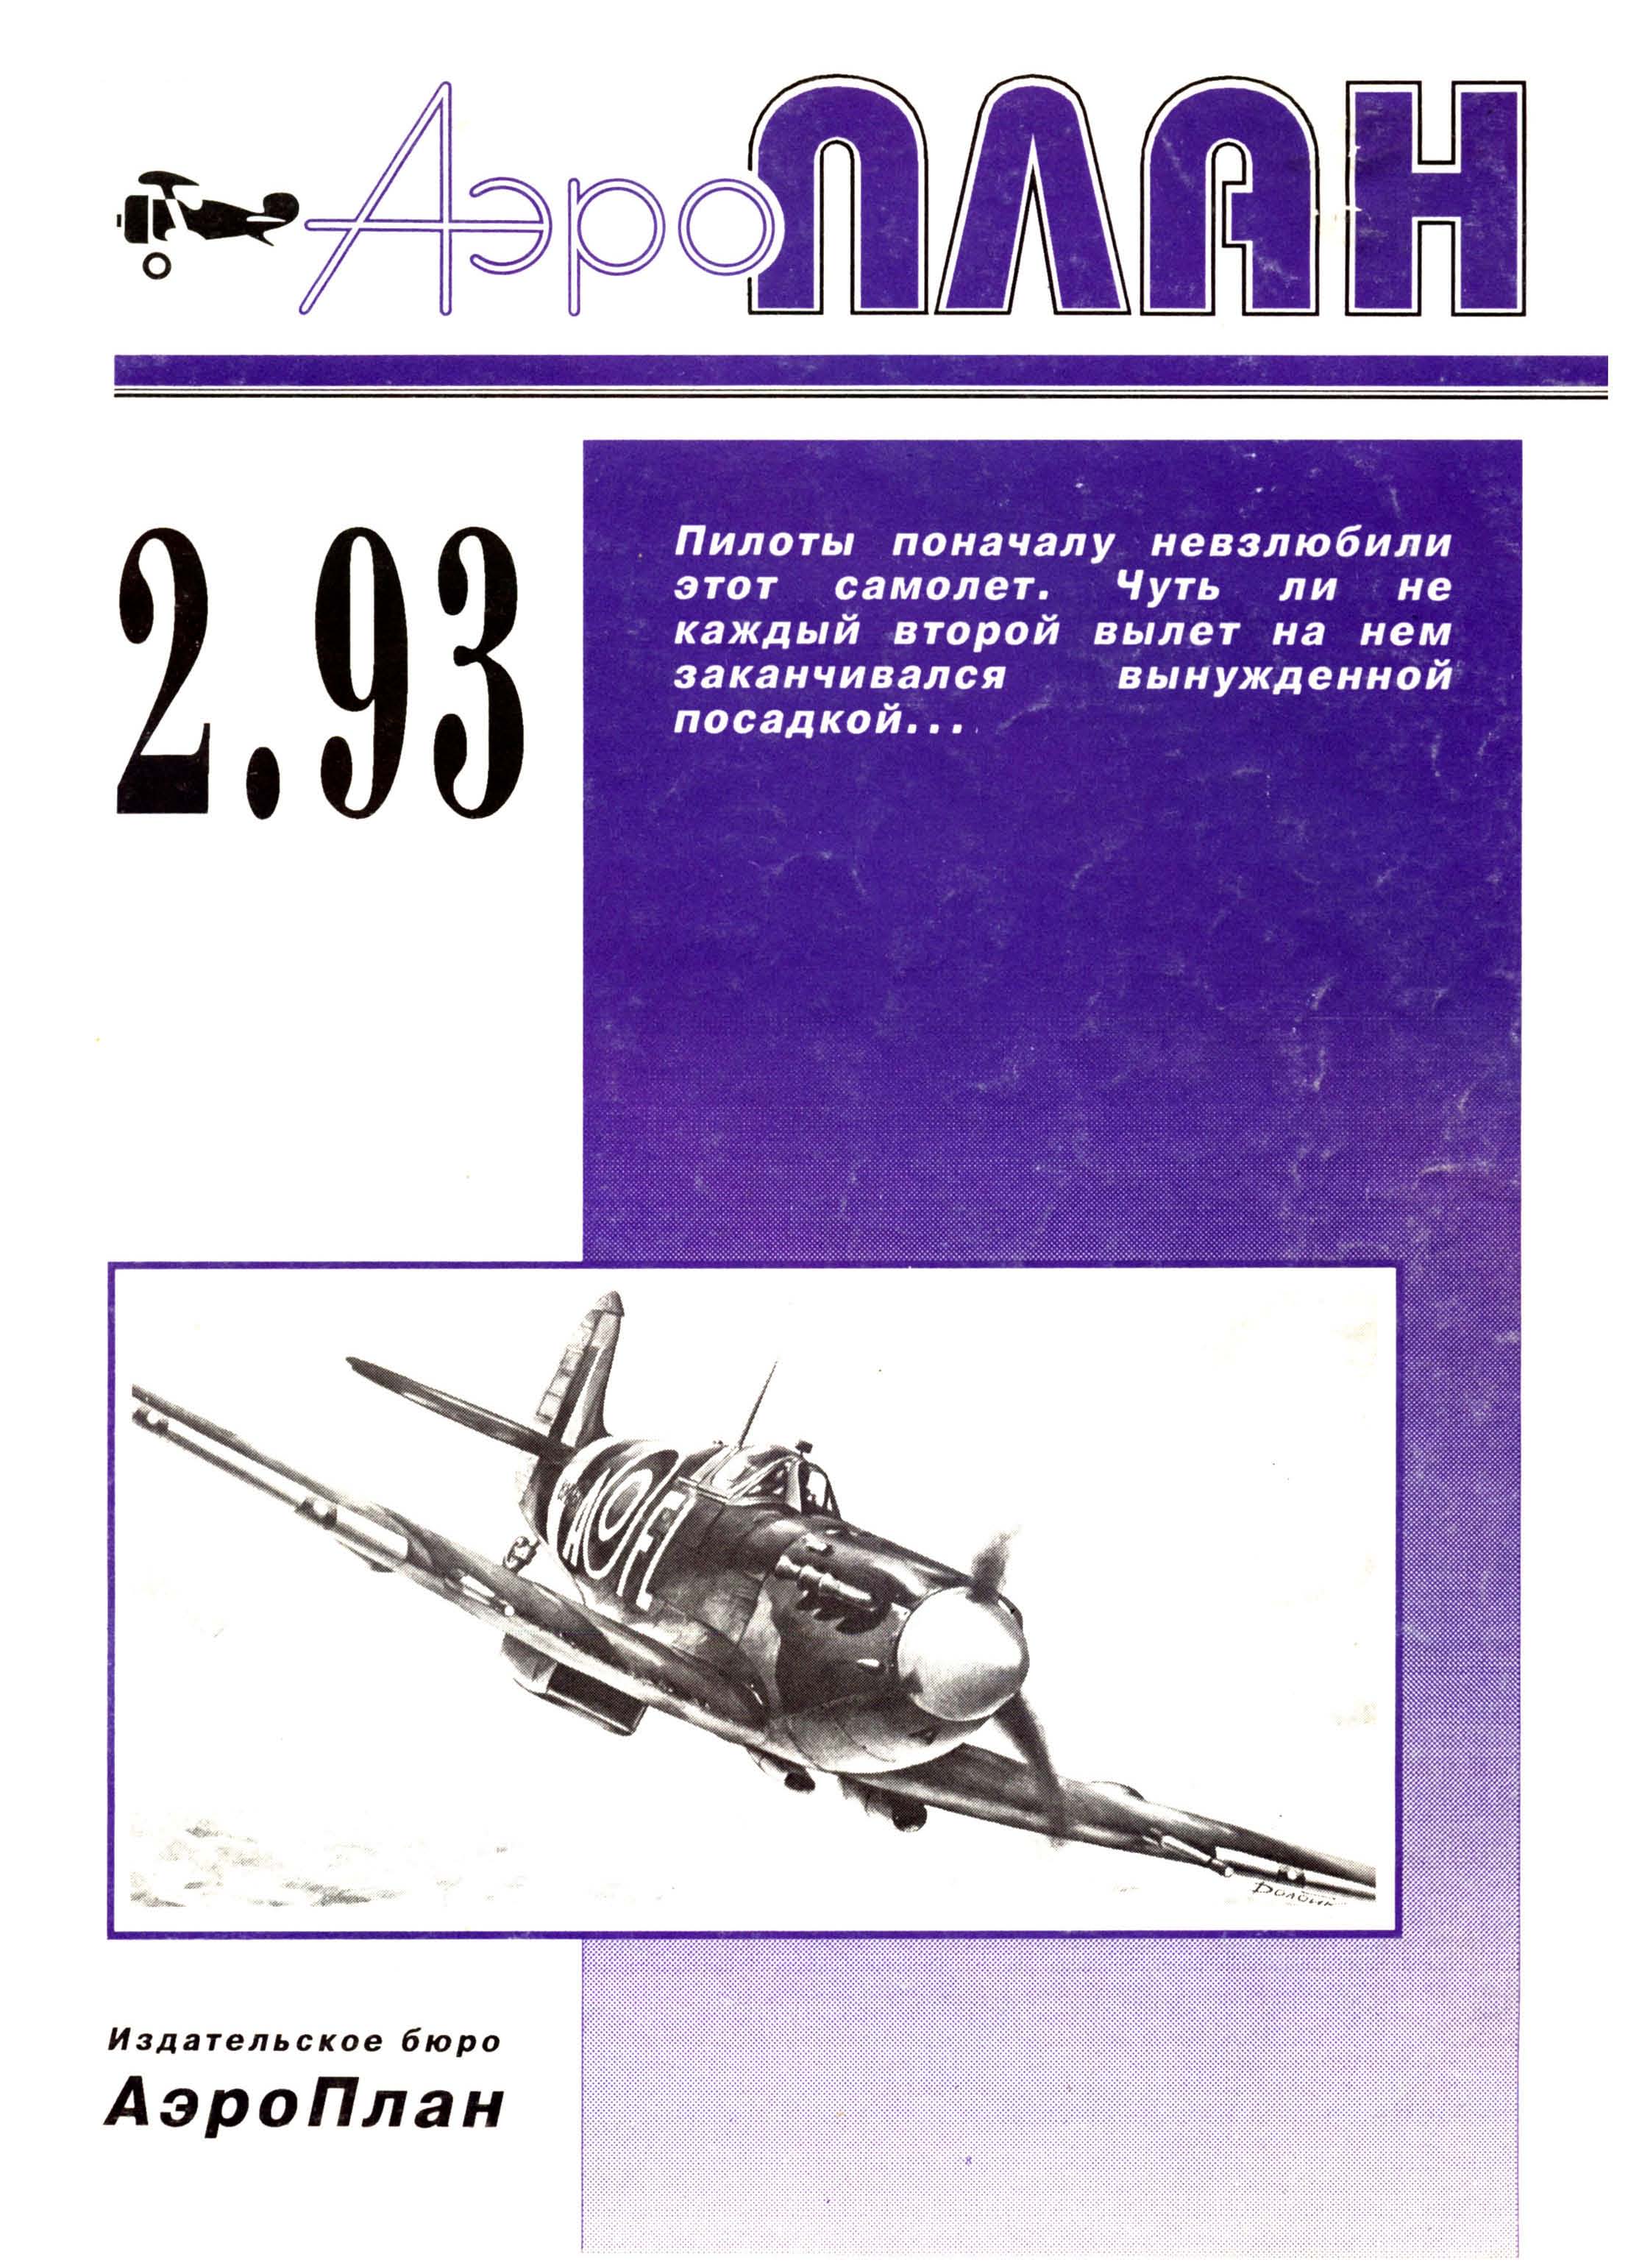 AeroPlan Ros - 1993-02.jpg